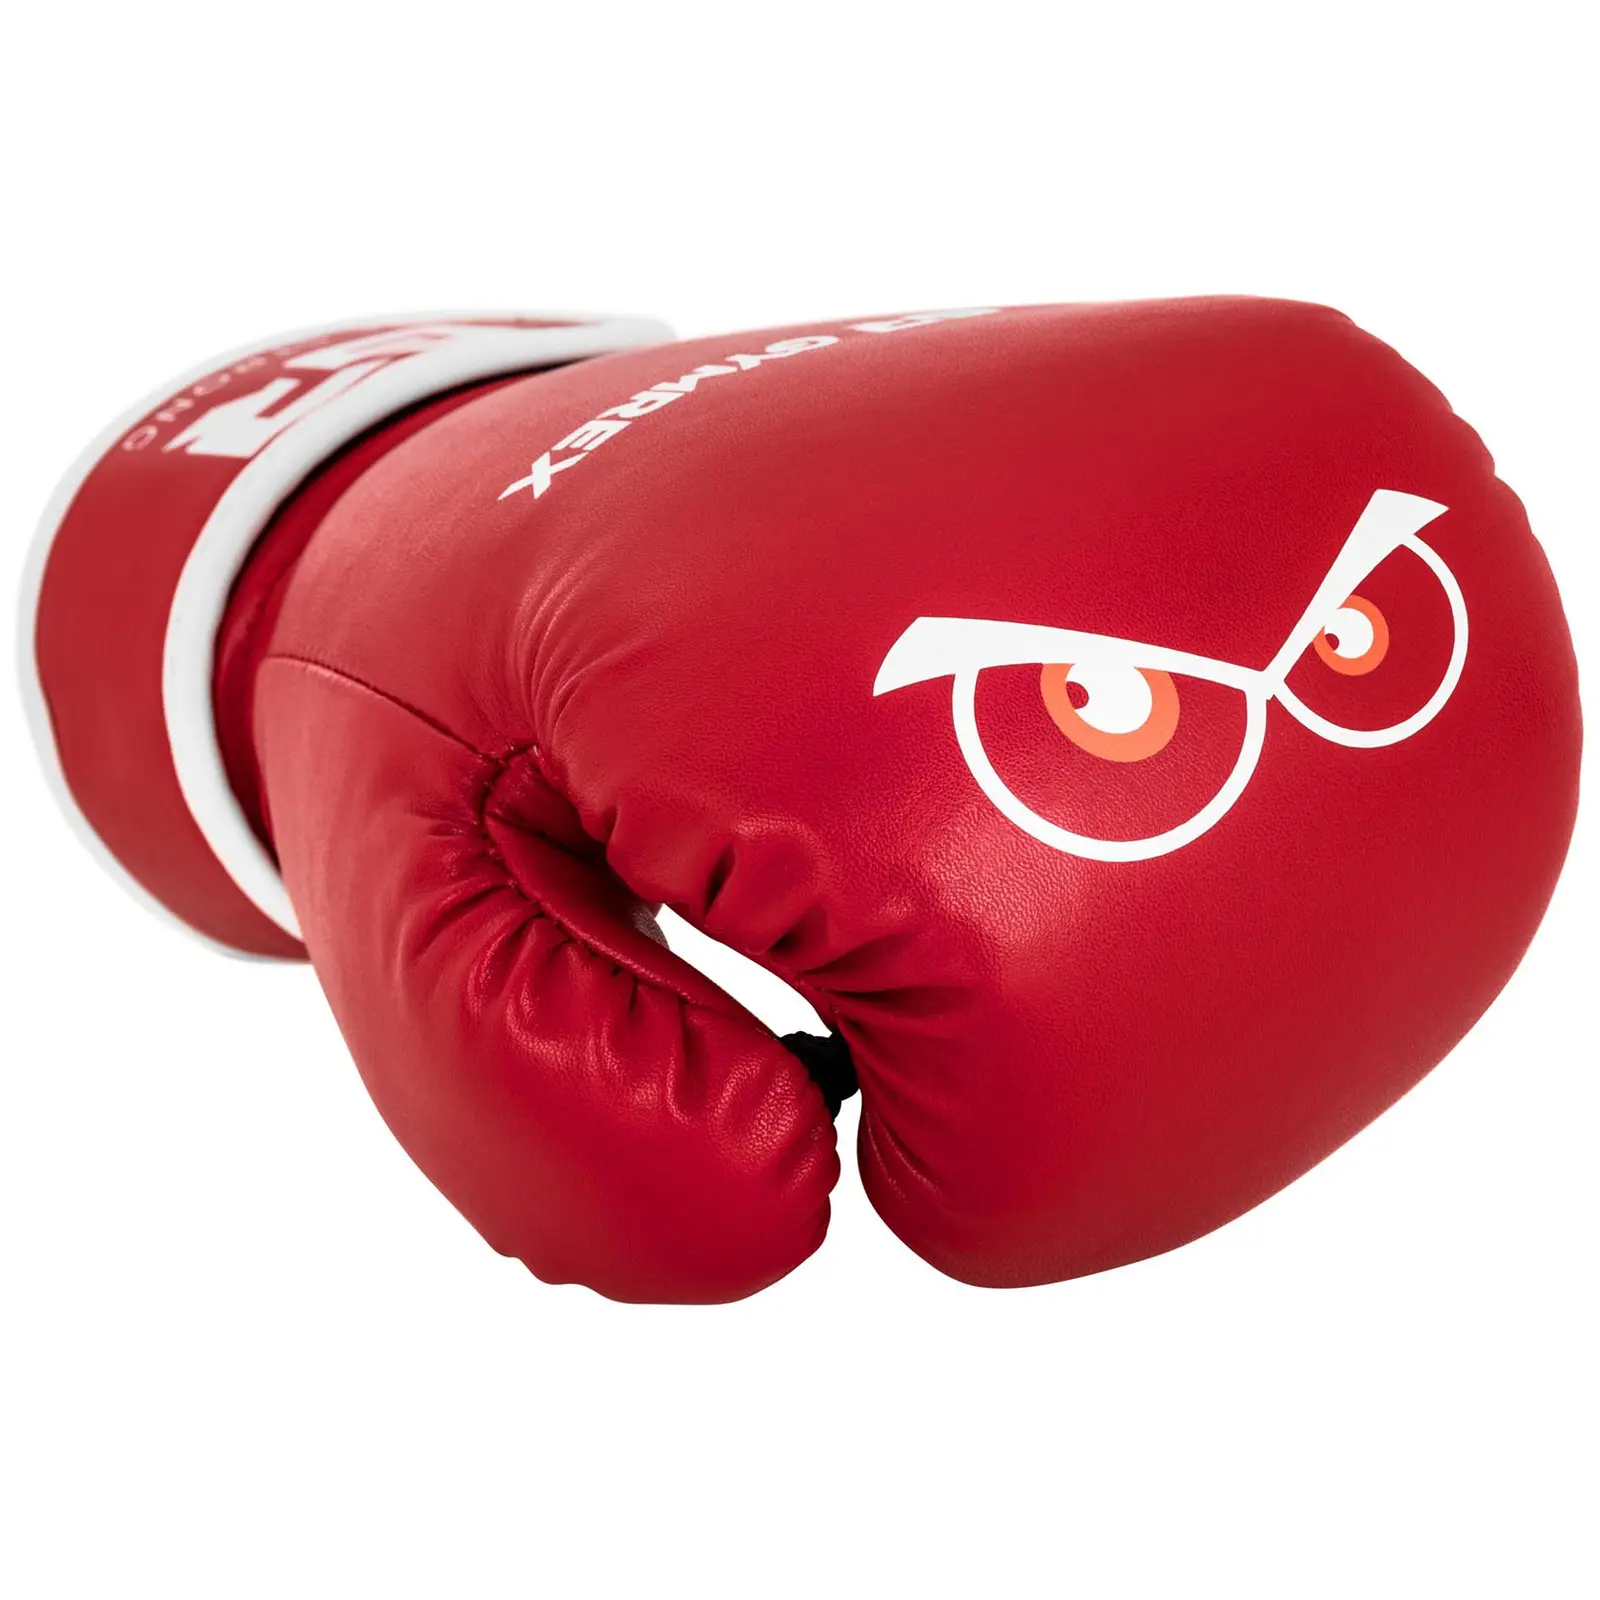 Rękawice bokserskie dla dzieci - czerwone - 4 oz